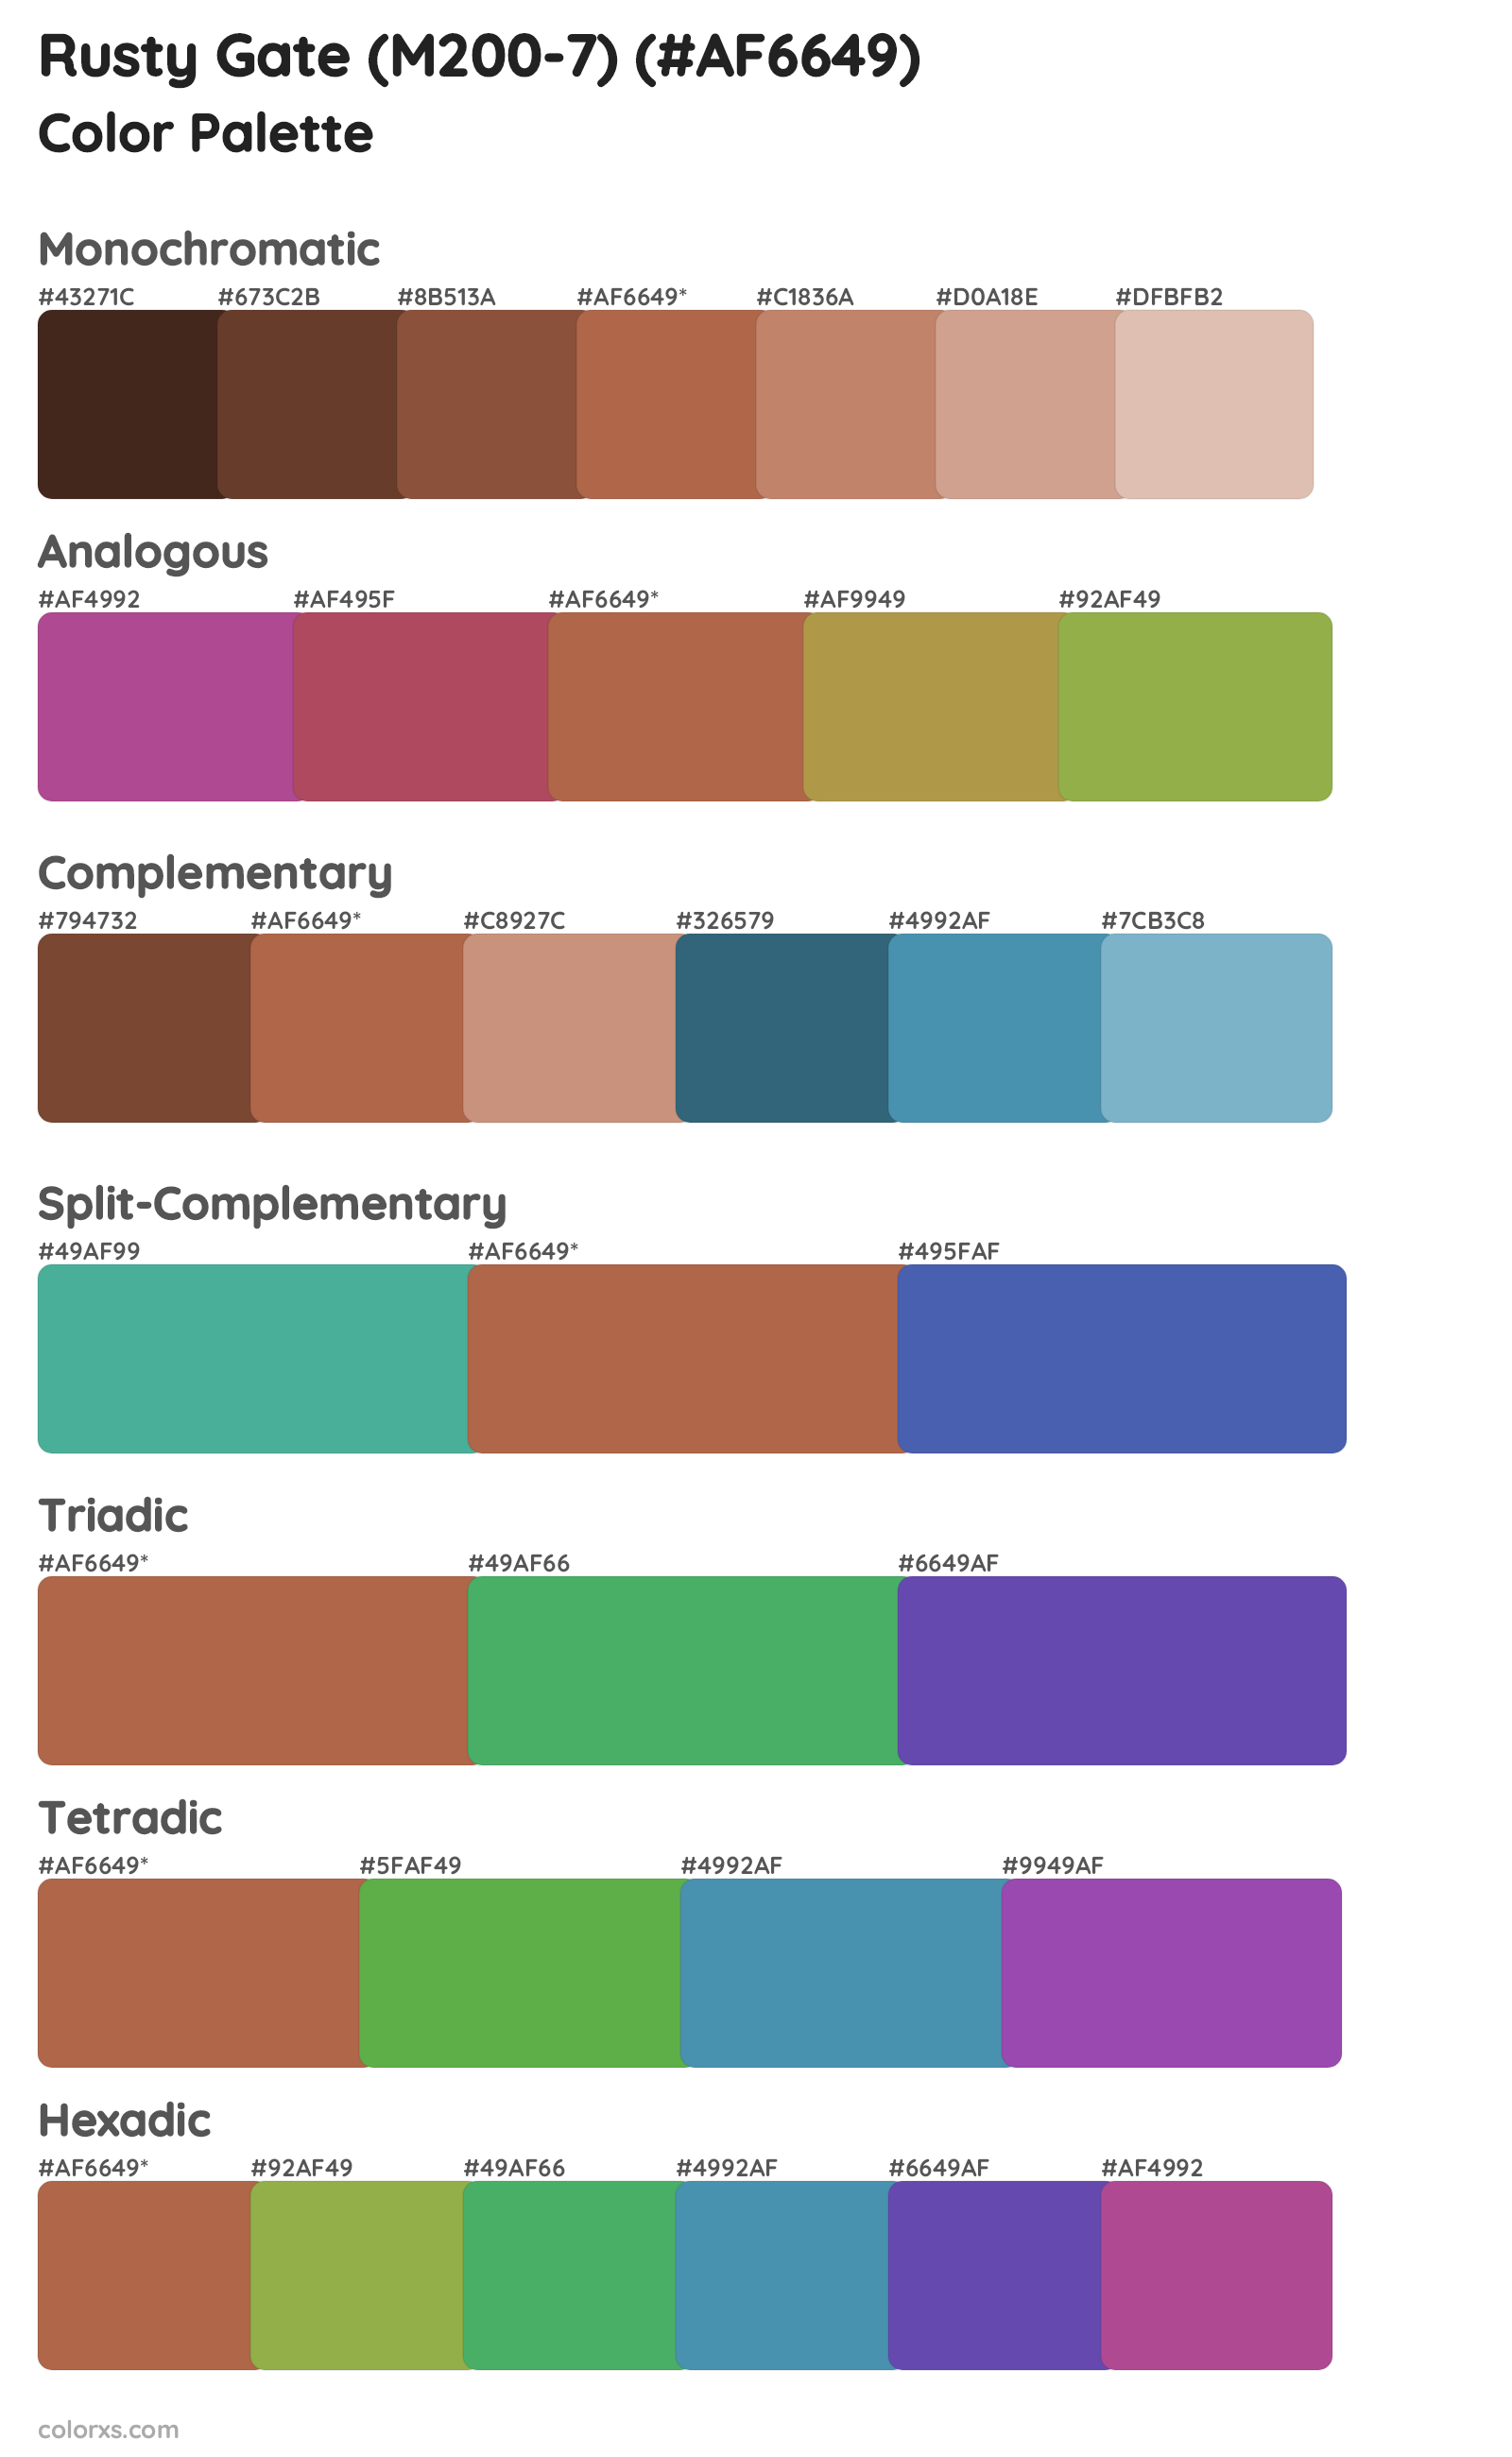 Rusty Gate (M200-7) Color Scheme Palettes